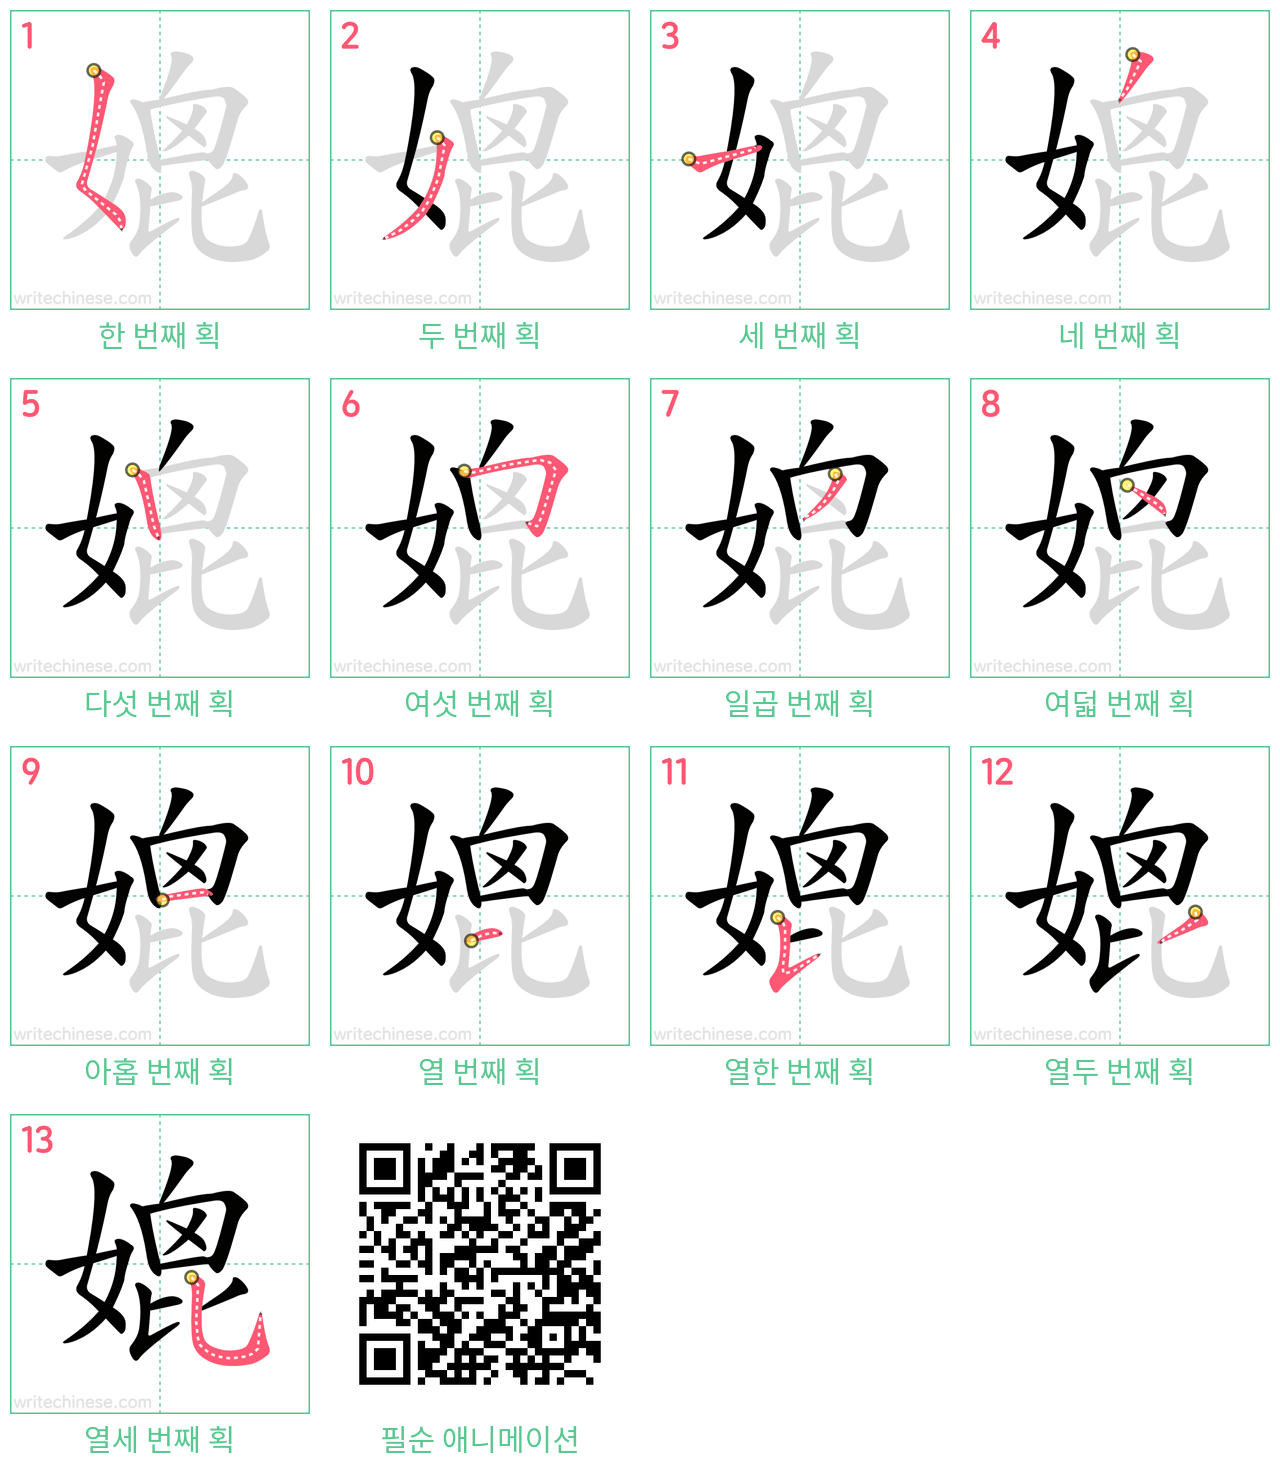 媲 step-by-step stroke order diagrams